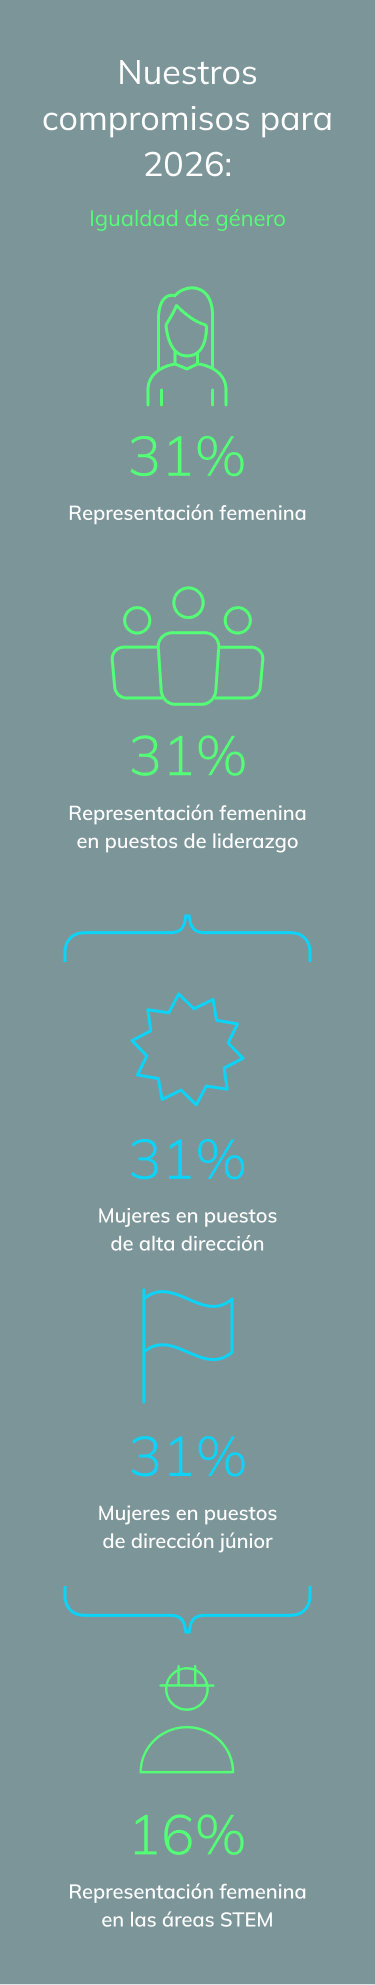 representación femenina